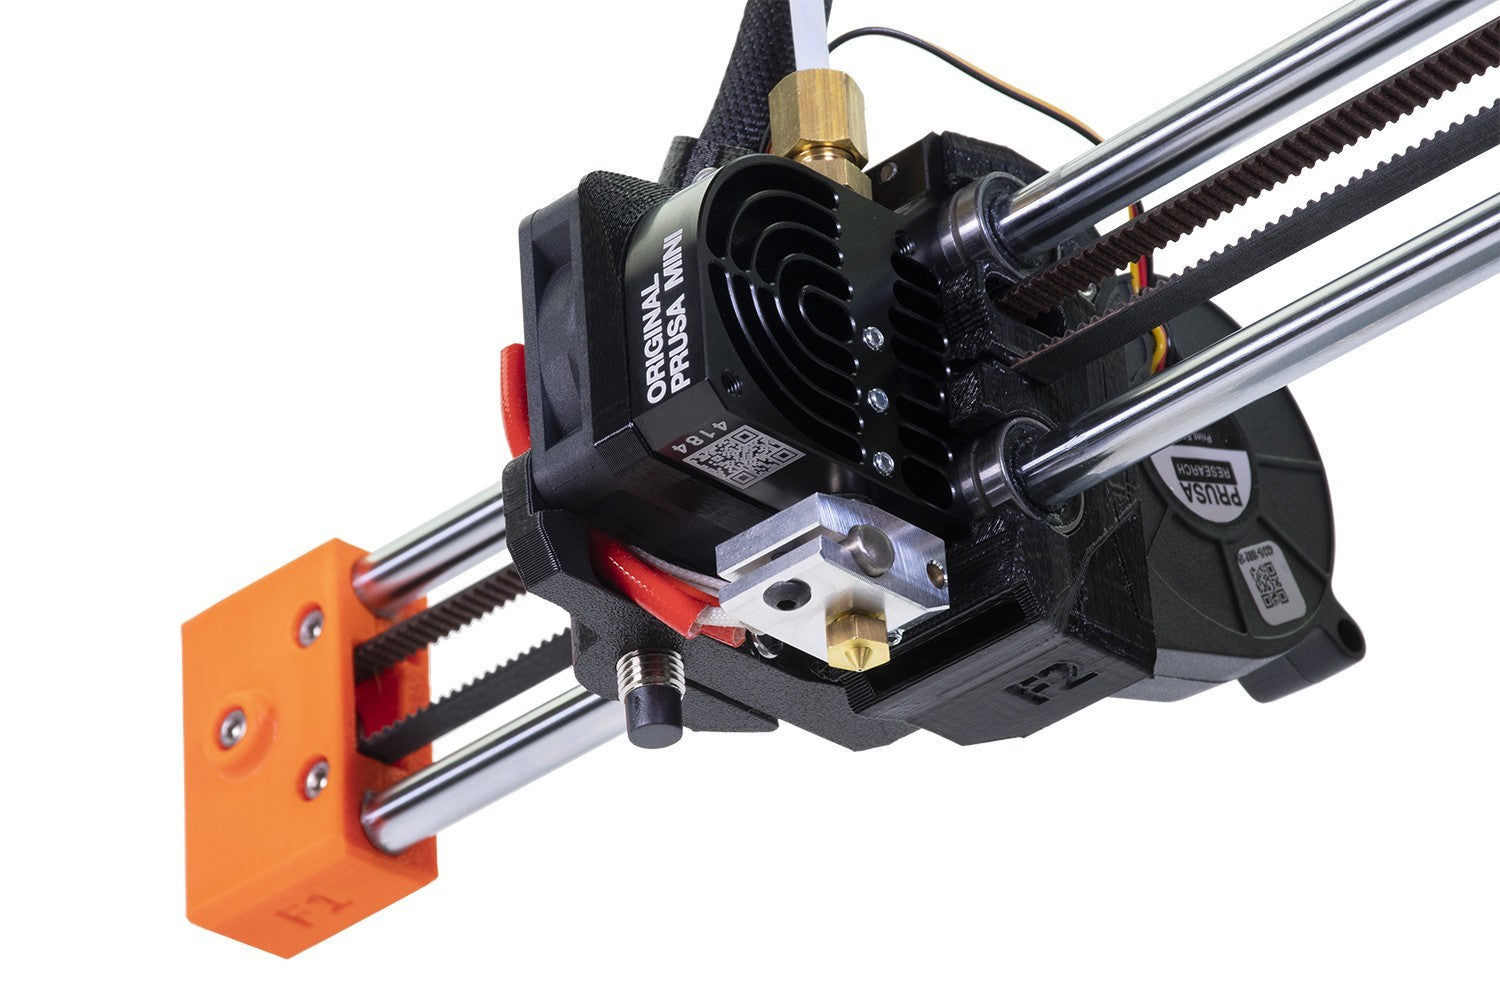 Original Prusa MINI+ 3D Printer With Filament Sensor – Printed Solid